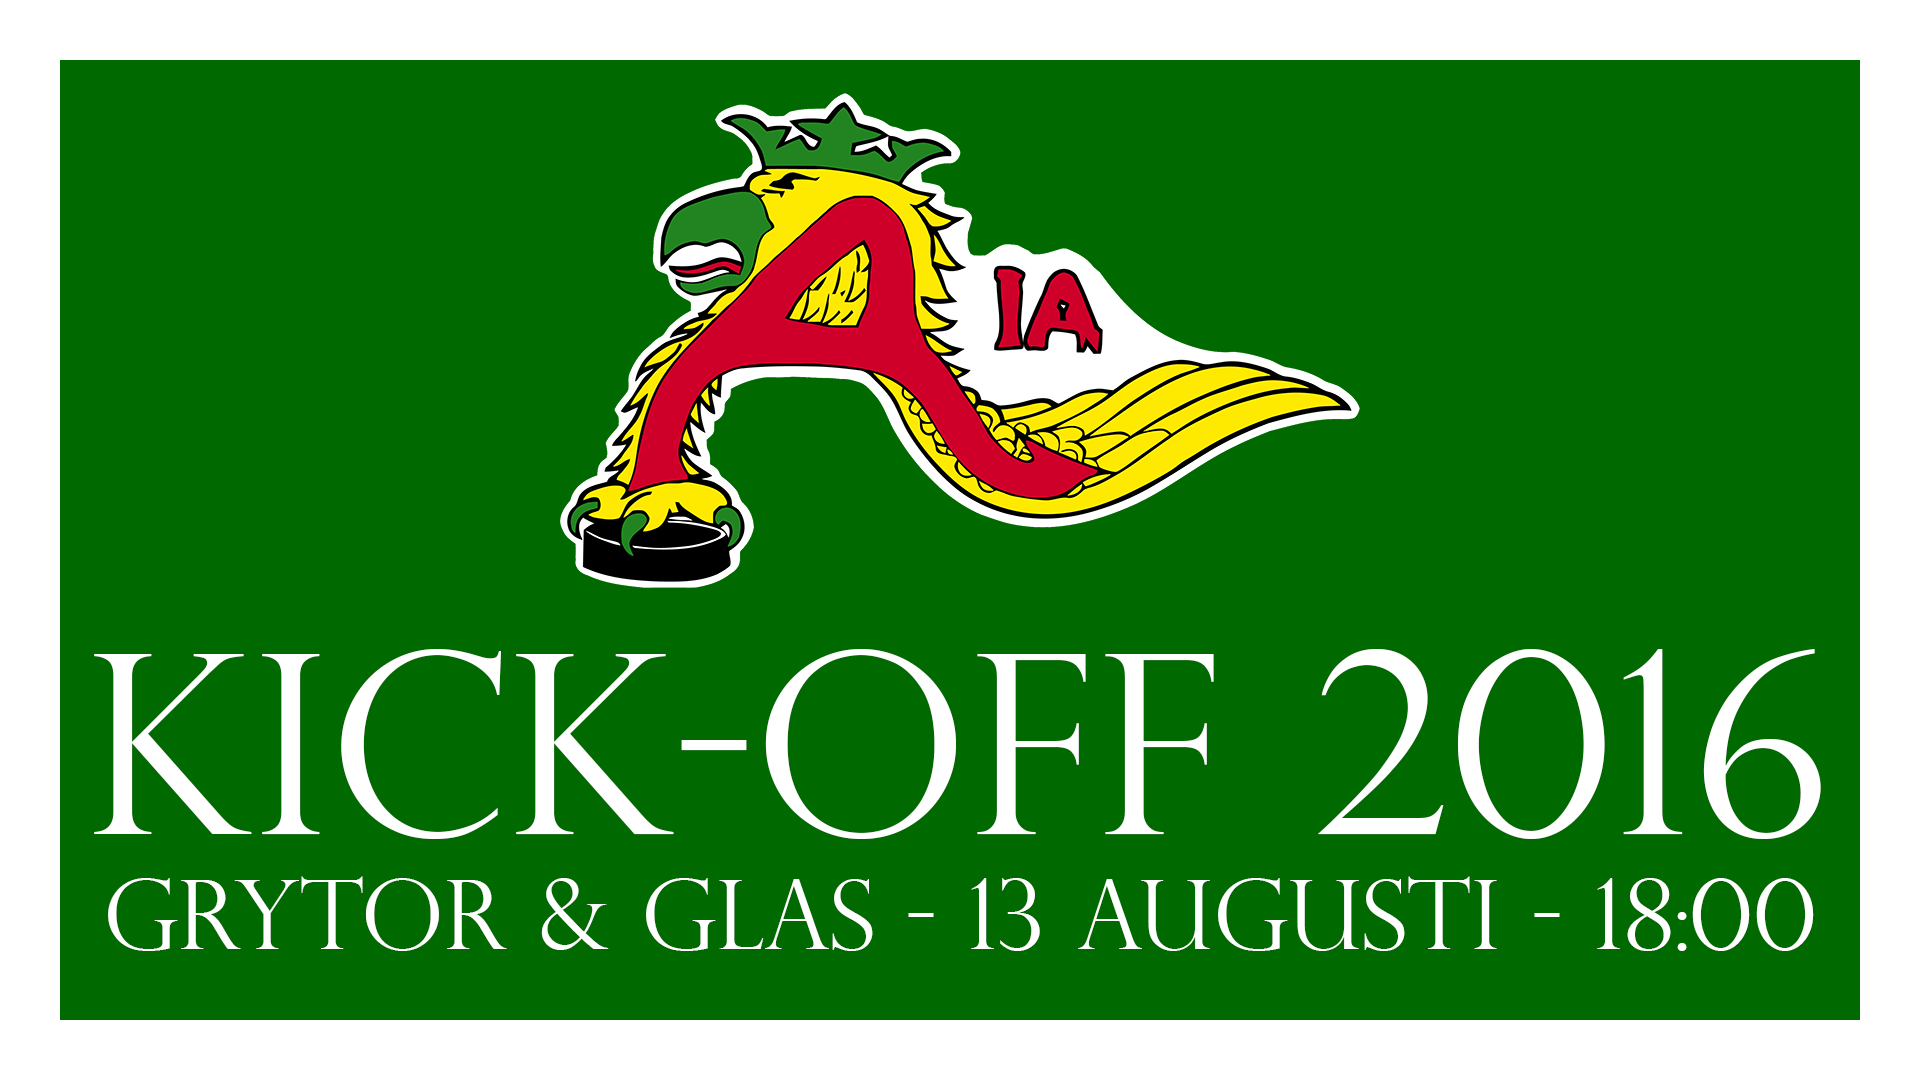 AIA Kick-Off 2016 & AIA Fotbollscup